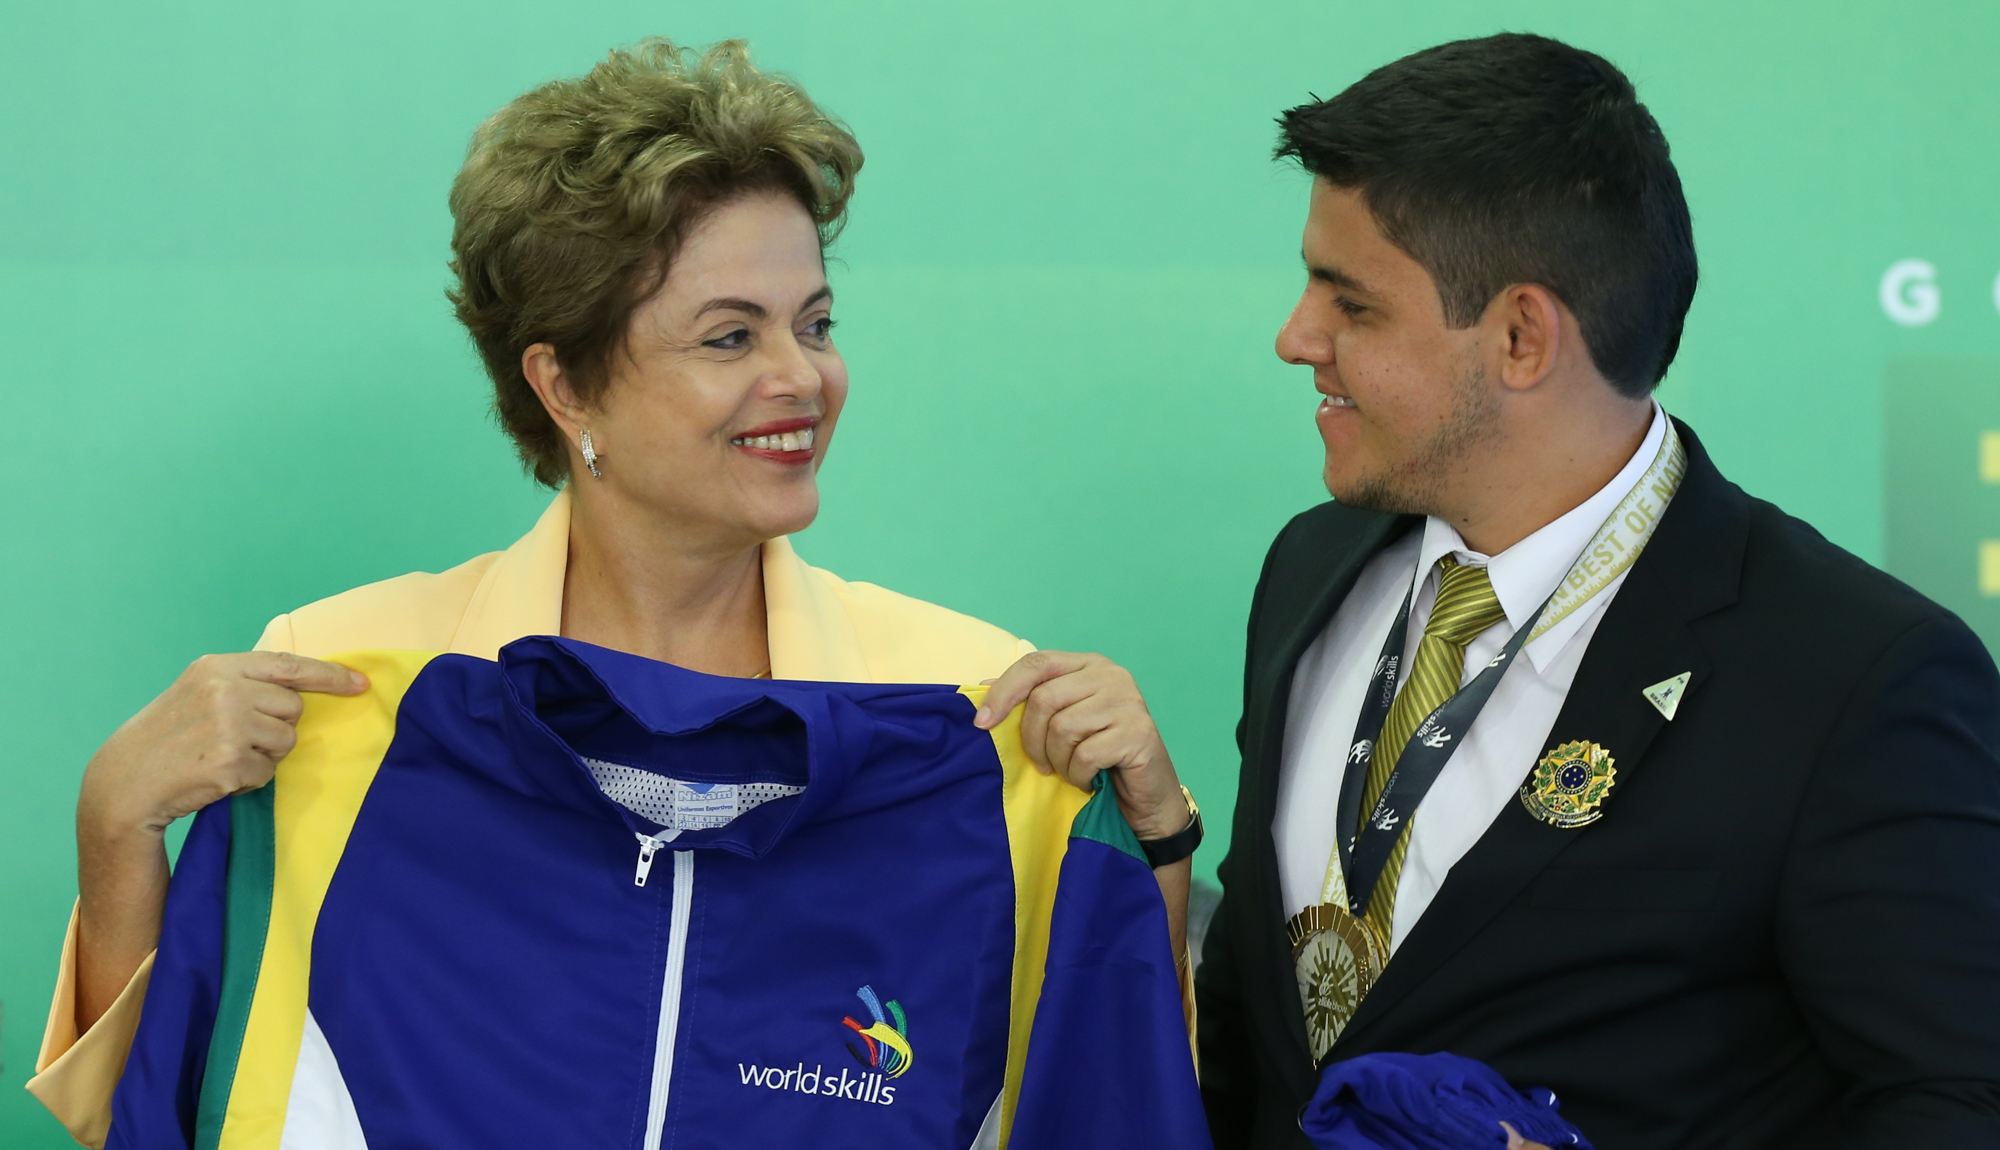 Pronatec vale cada centavo investido pelo governo, ressalta Dilma